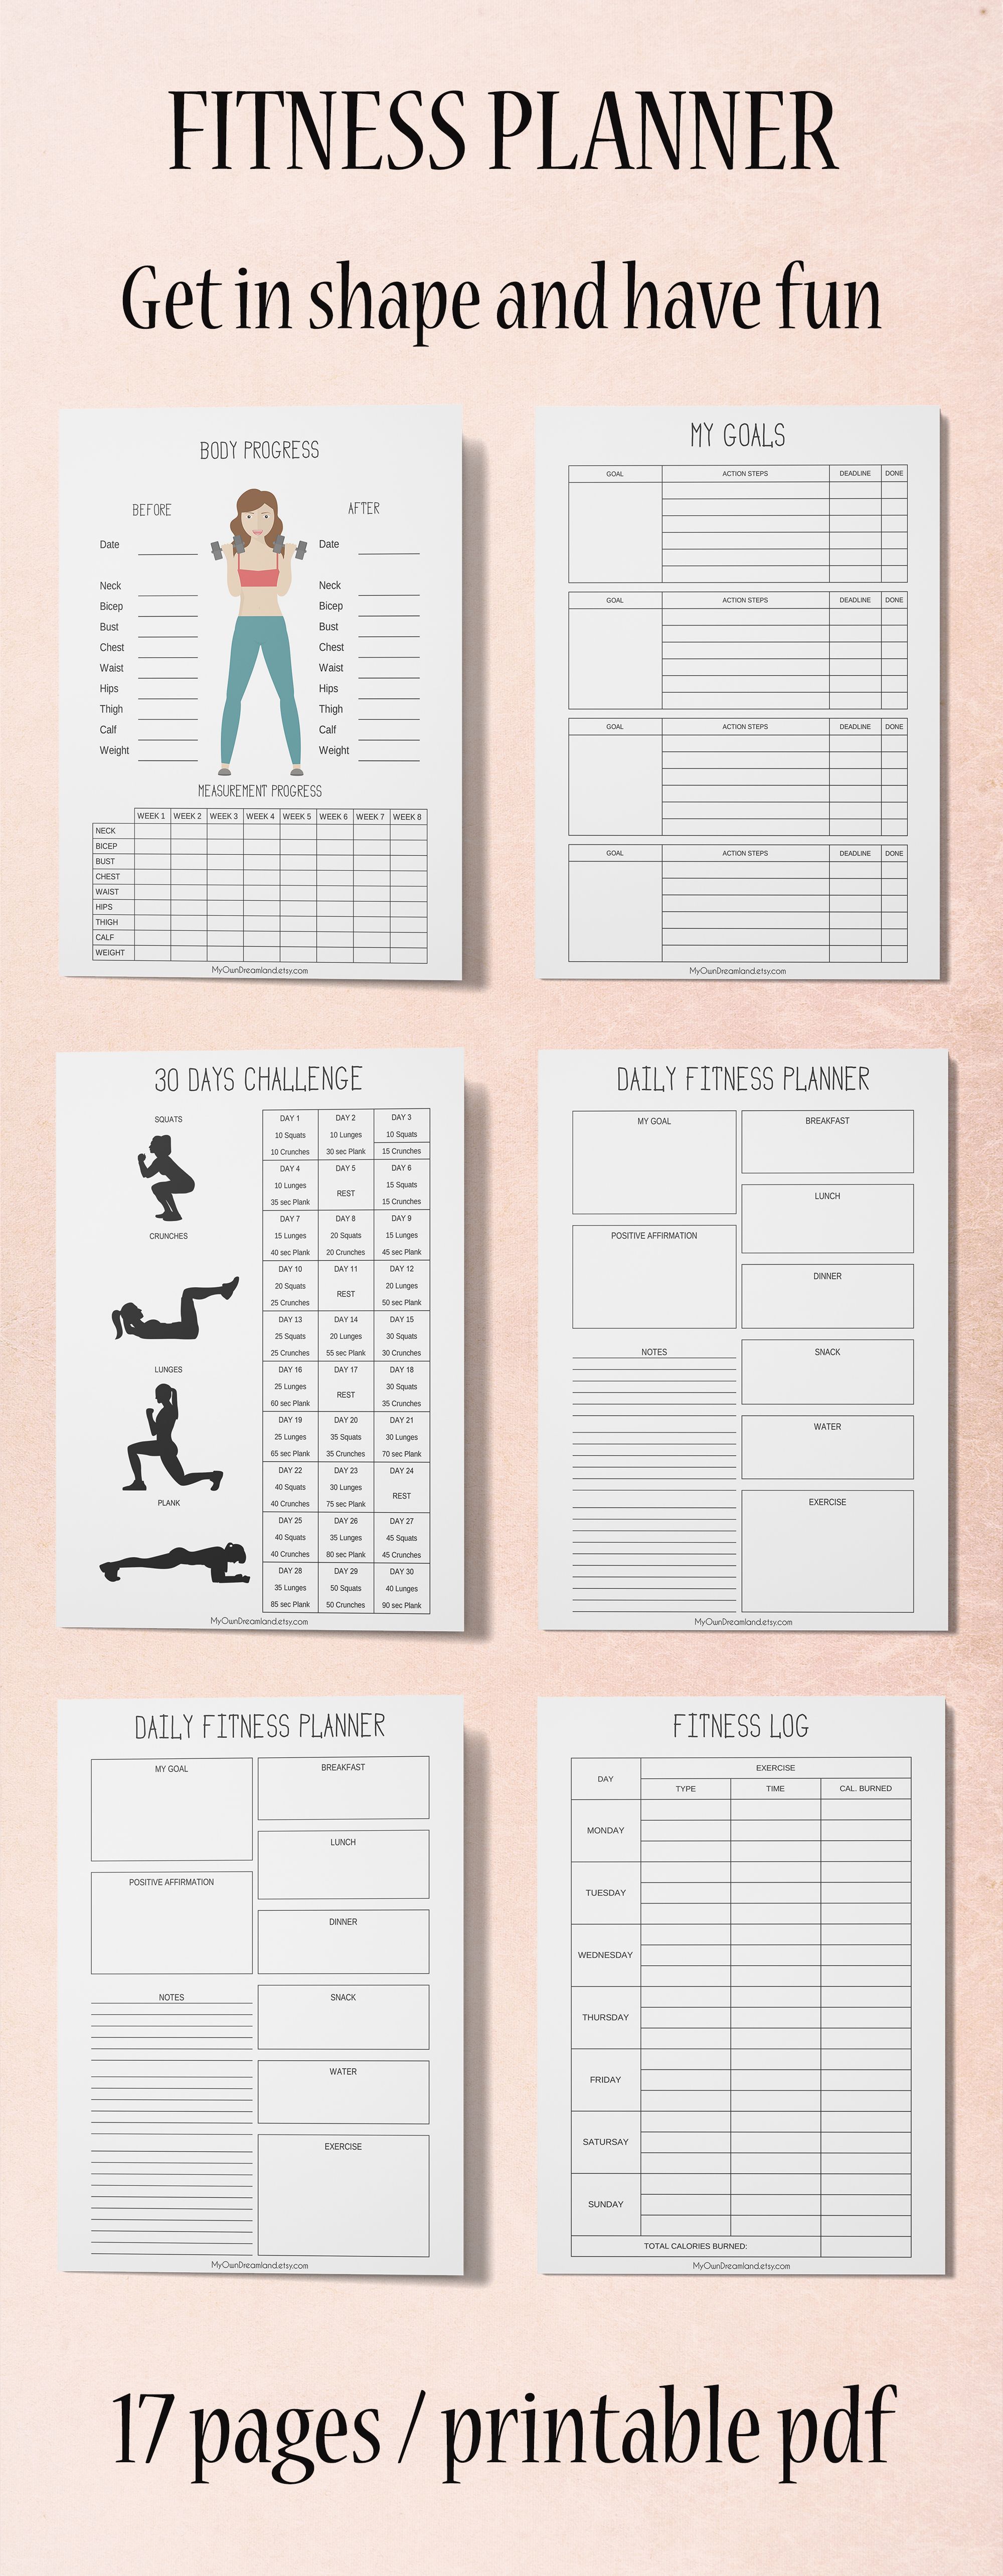 16 fitness Planner diy ideas